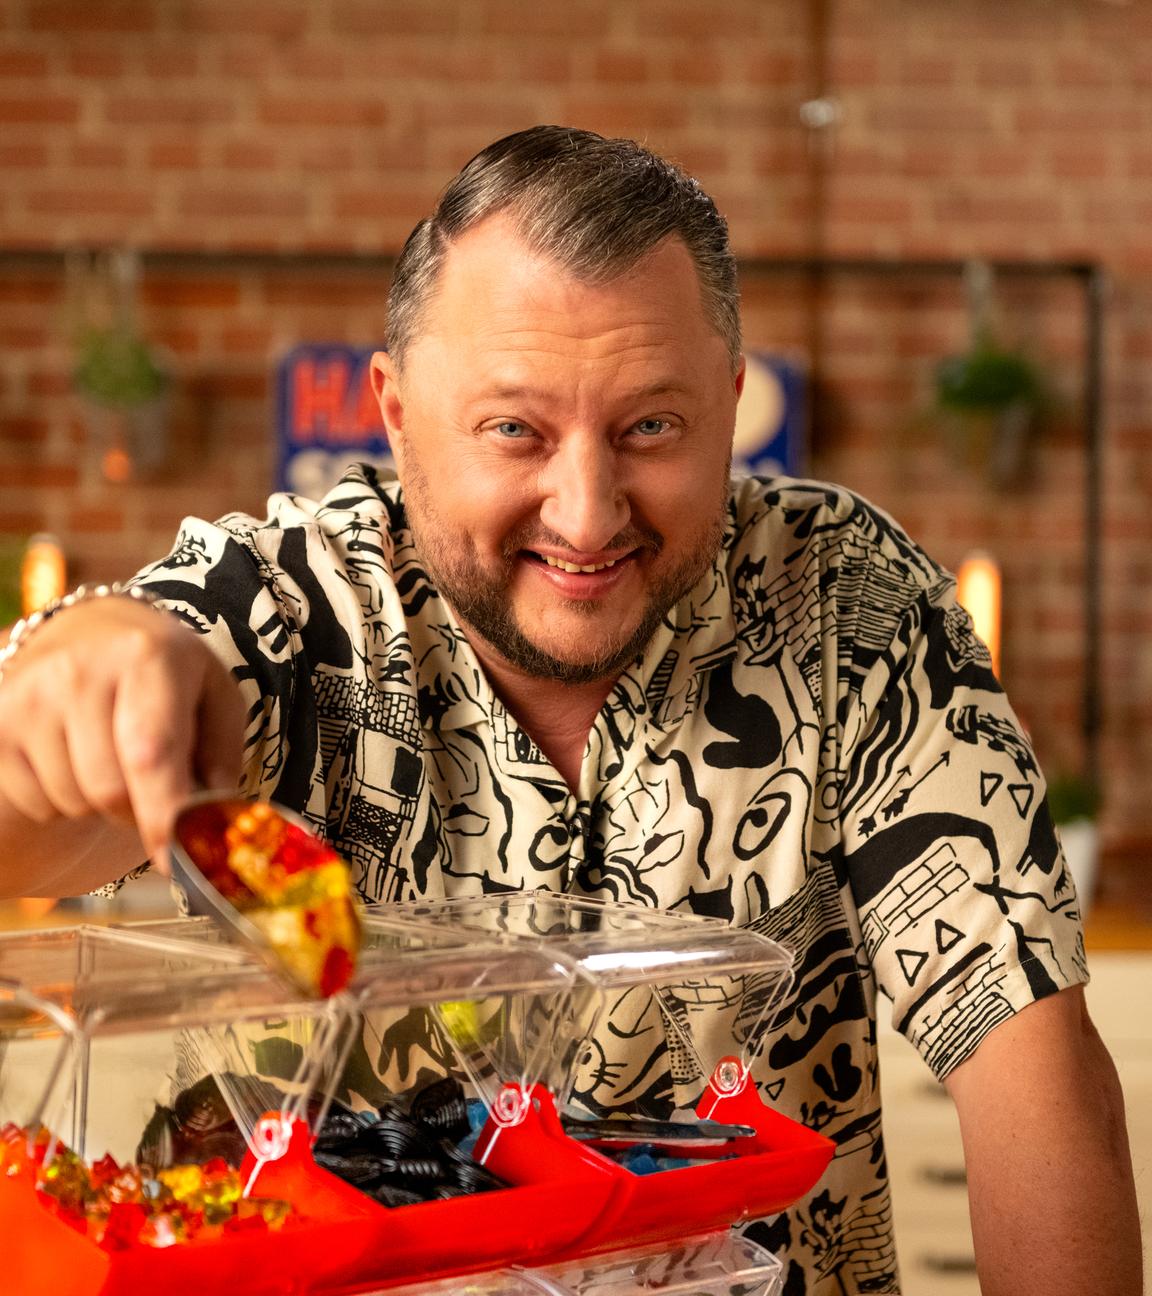 Sebastian Lege steht in seiner Küche hinter einer Süßigkeiten-Theke. In seiner Hand hält er eine Schaufel voll mit Goldbären.